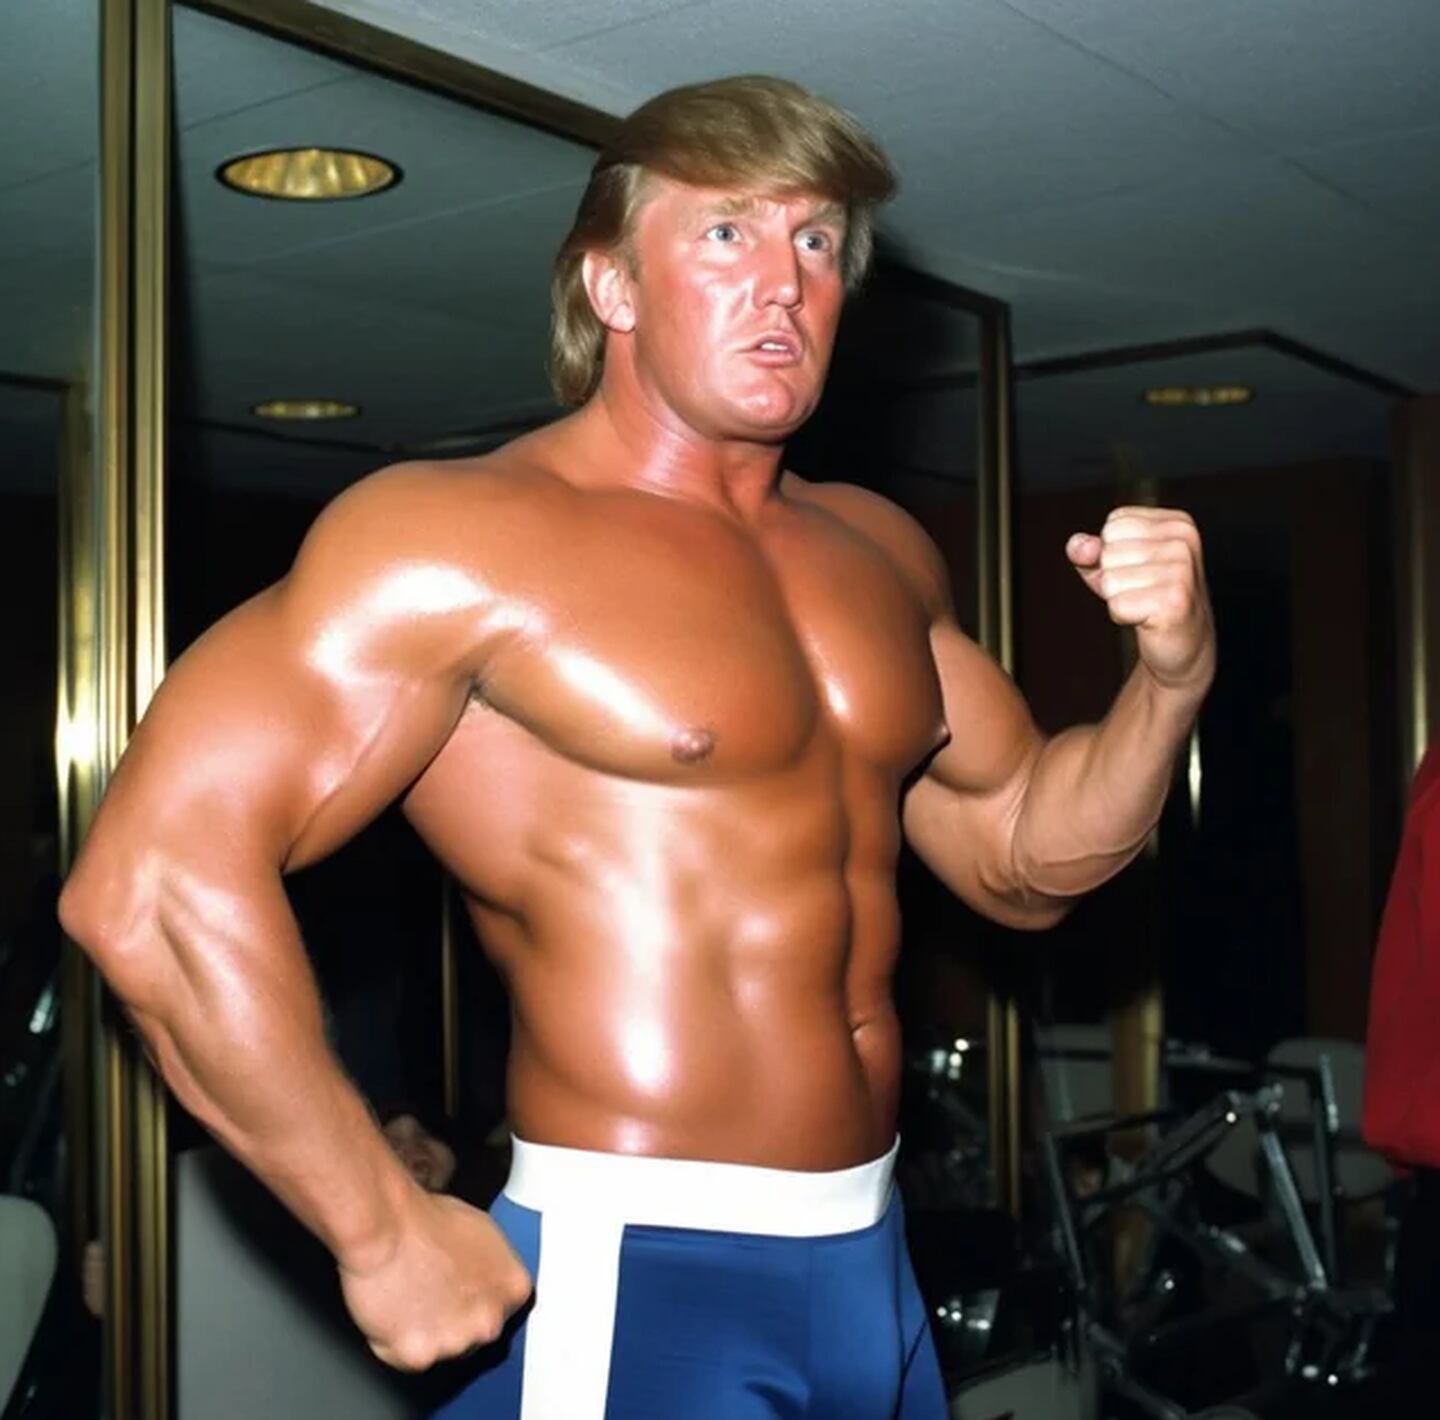 Donald Trump con cuerpo atlético, según la IA